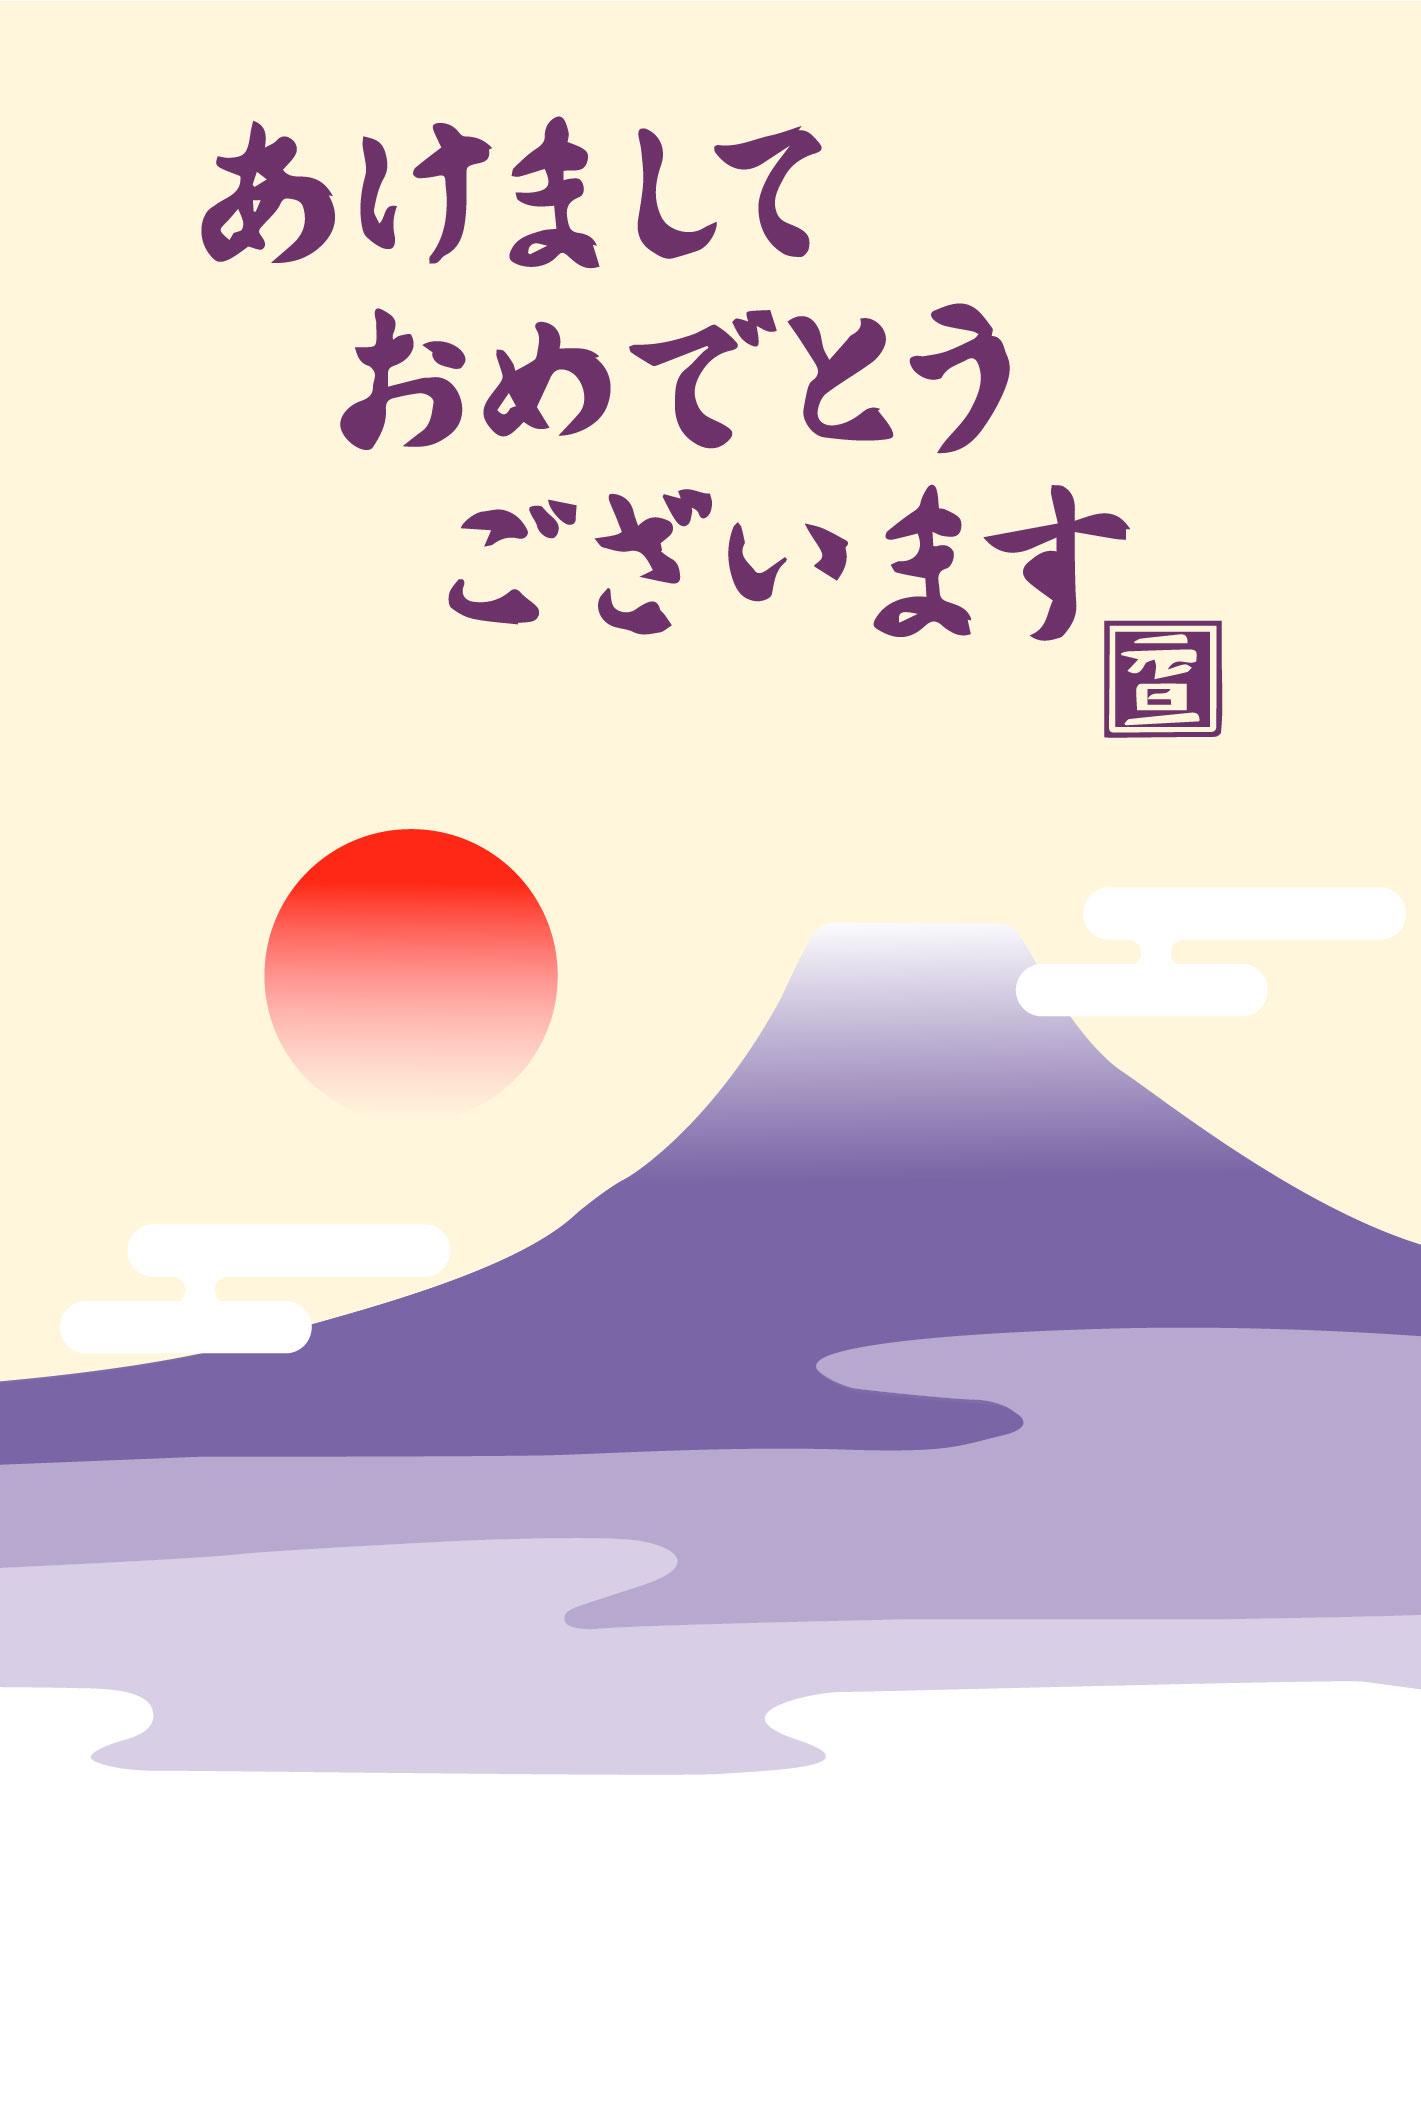 「あけましておめでとうございます」紫富士山と初日の出のイラスト年賀状無料イラスト素材です